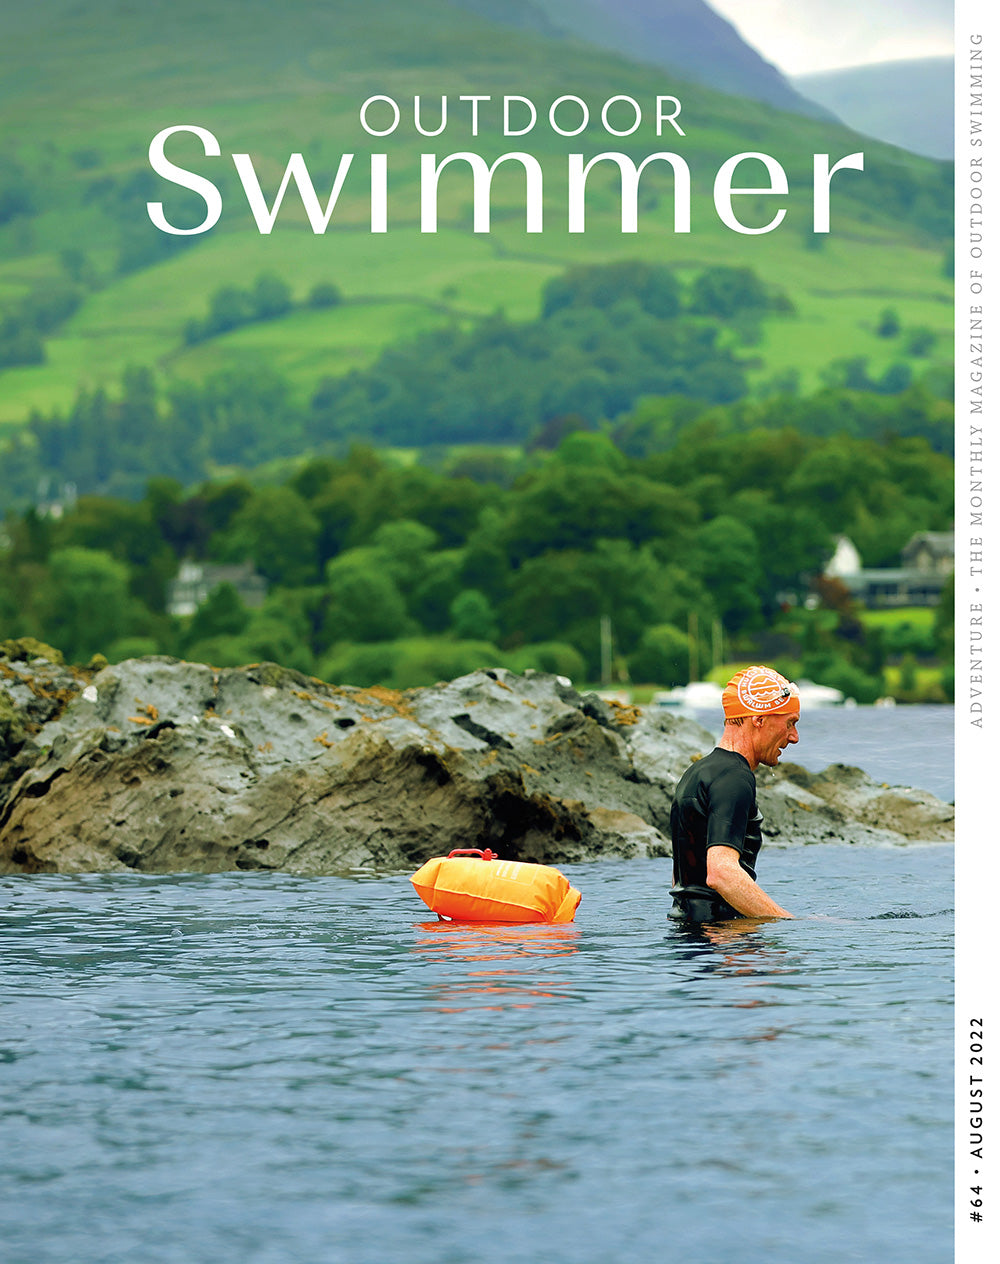 Outdoor Swimmer Magazine - Adventure